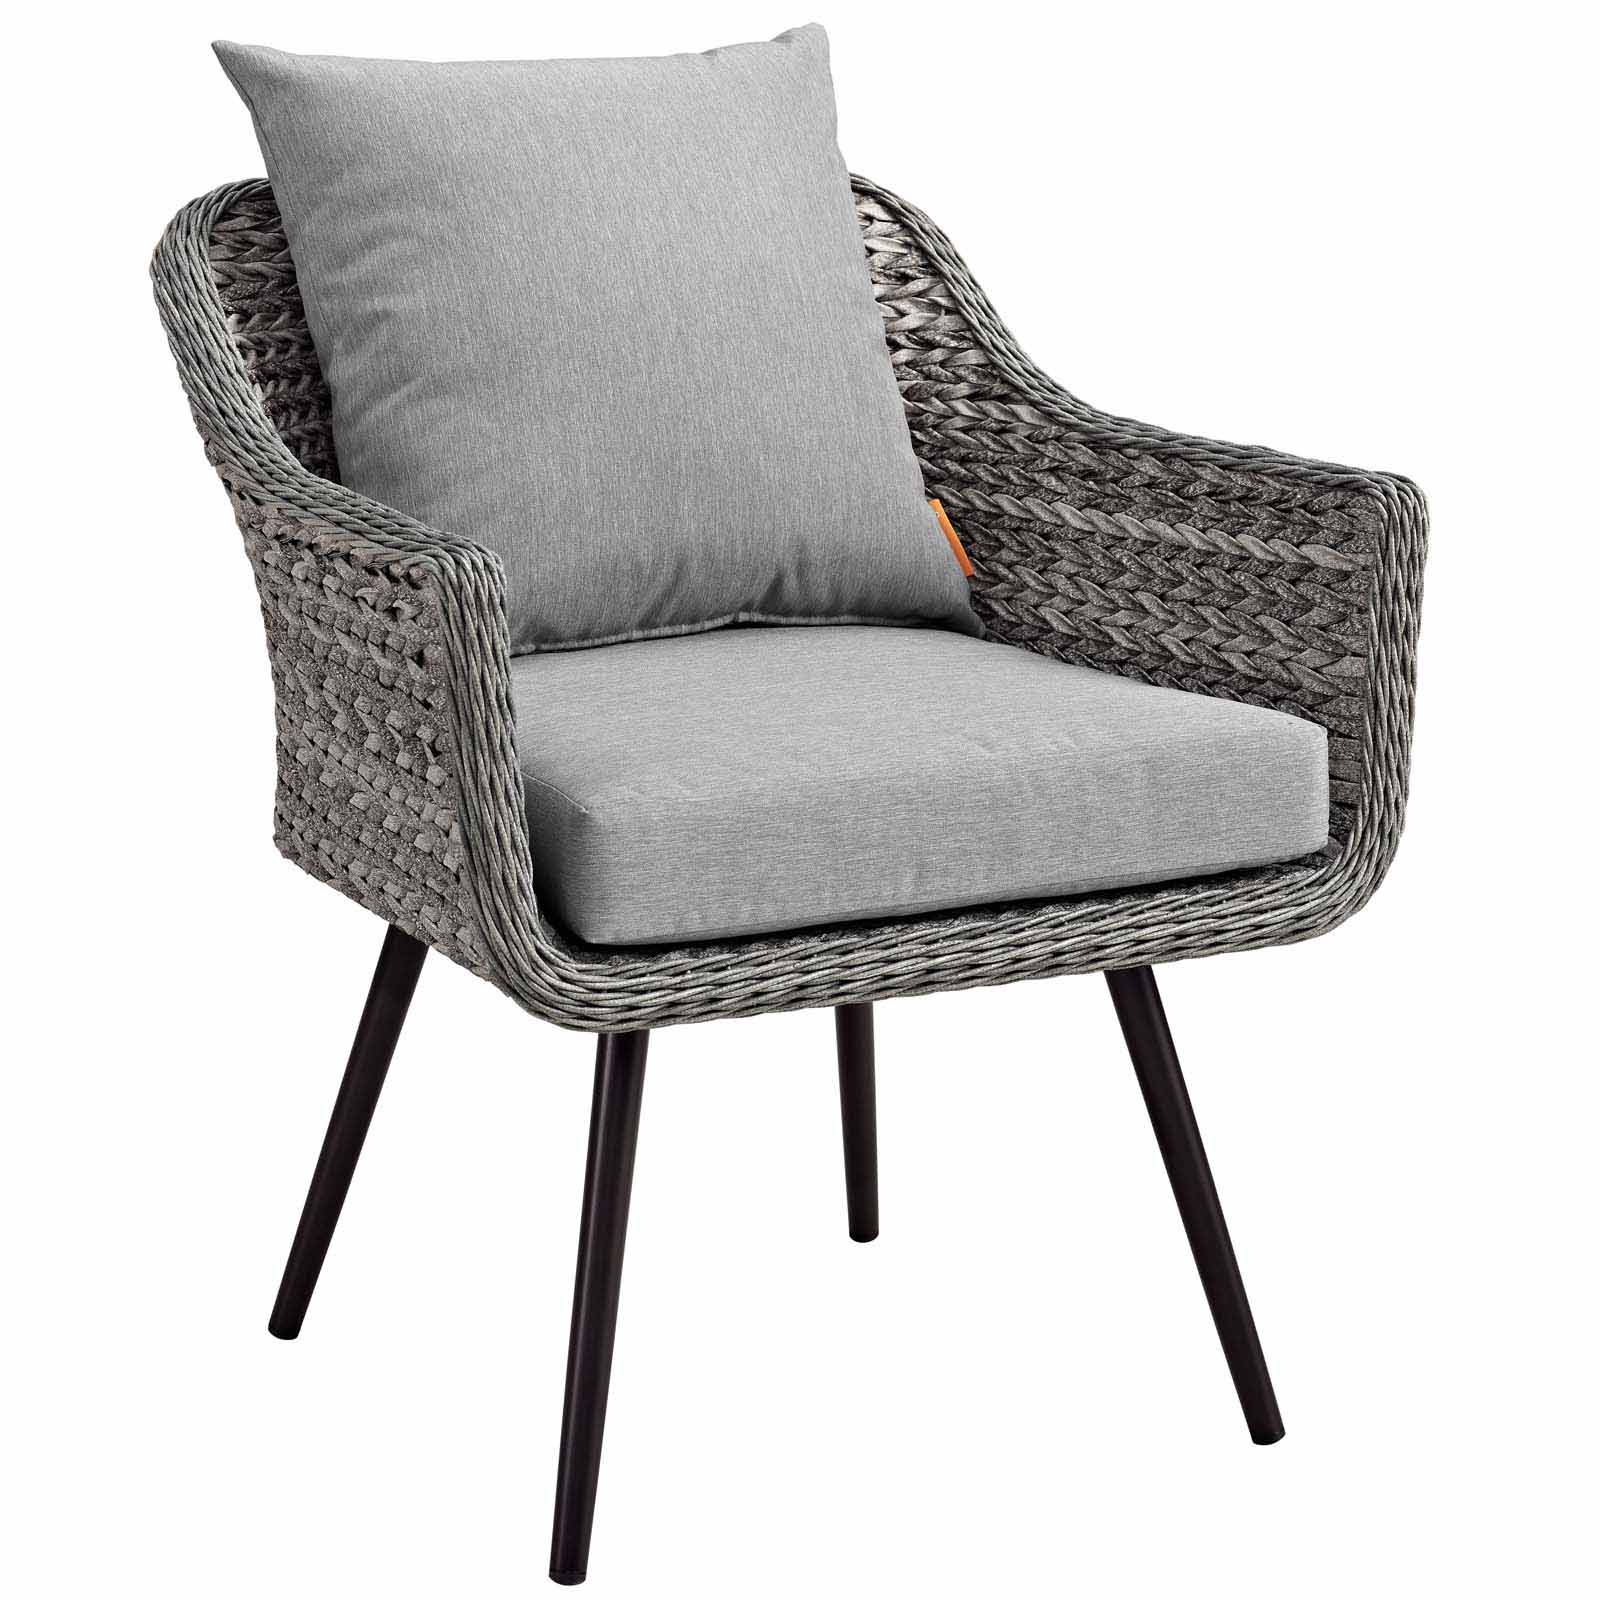 Endeavor Outdoor Patio Wicker Rattan Armchair in Gray Gray